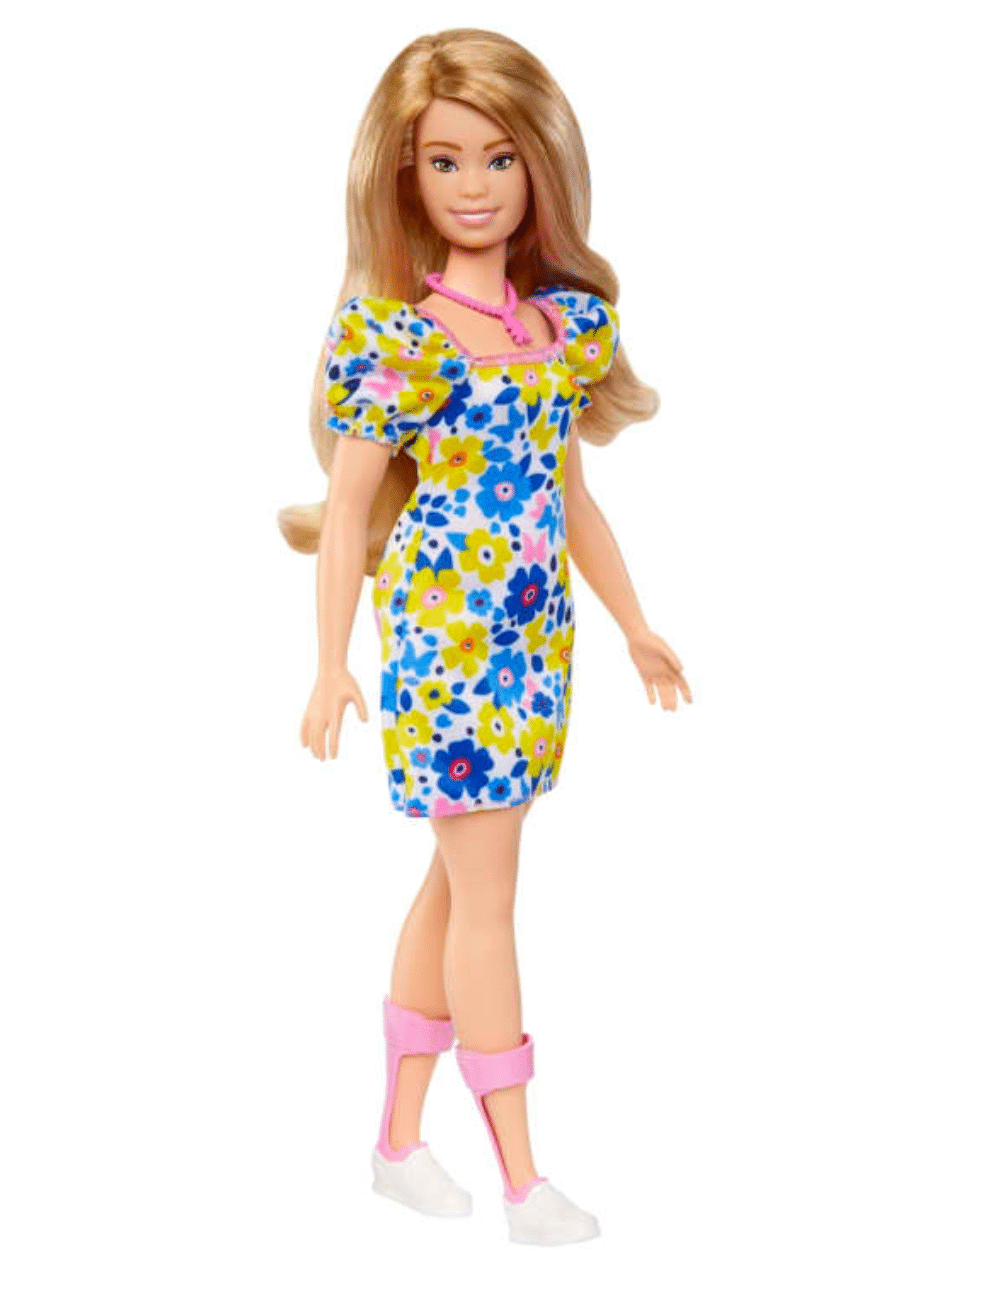 Barbie Síndrome de Down